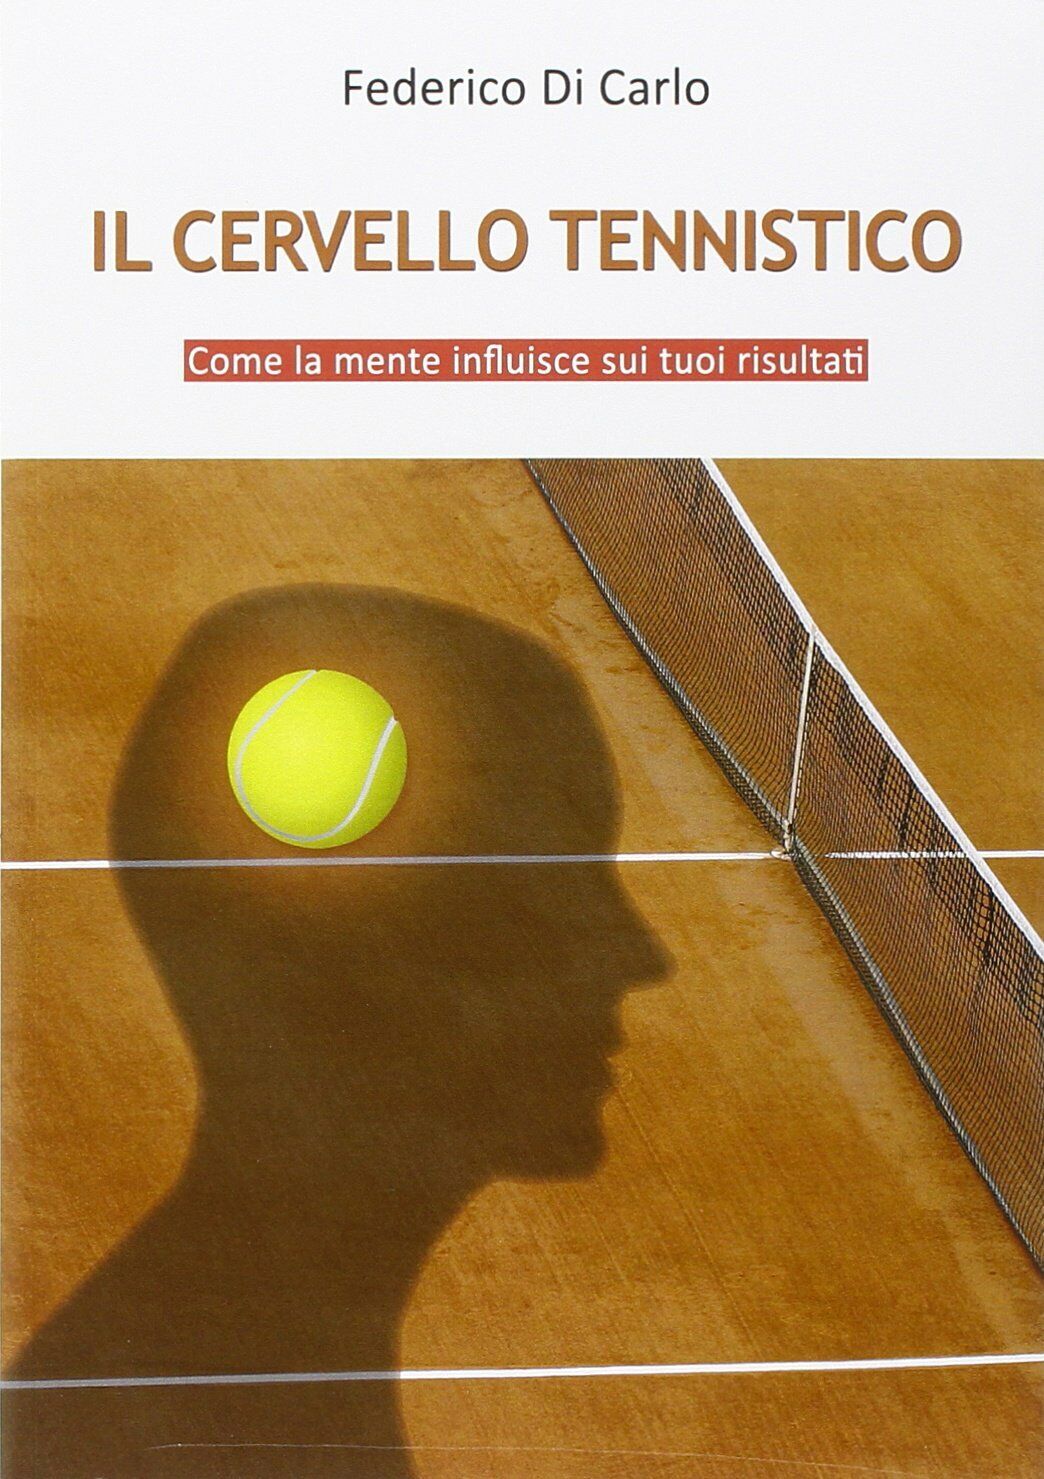 Il cervello tennistico - Federico Di Carlo - Federico Di Carlo - & MyBook,2012 libro usato